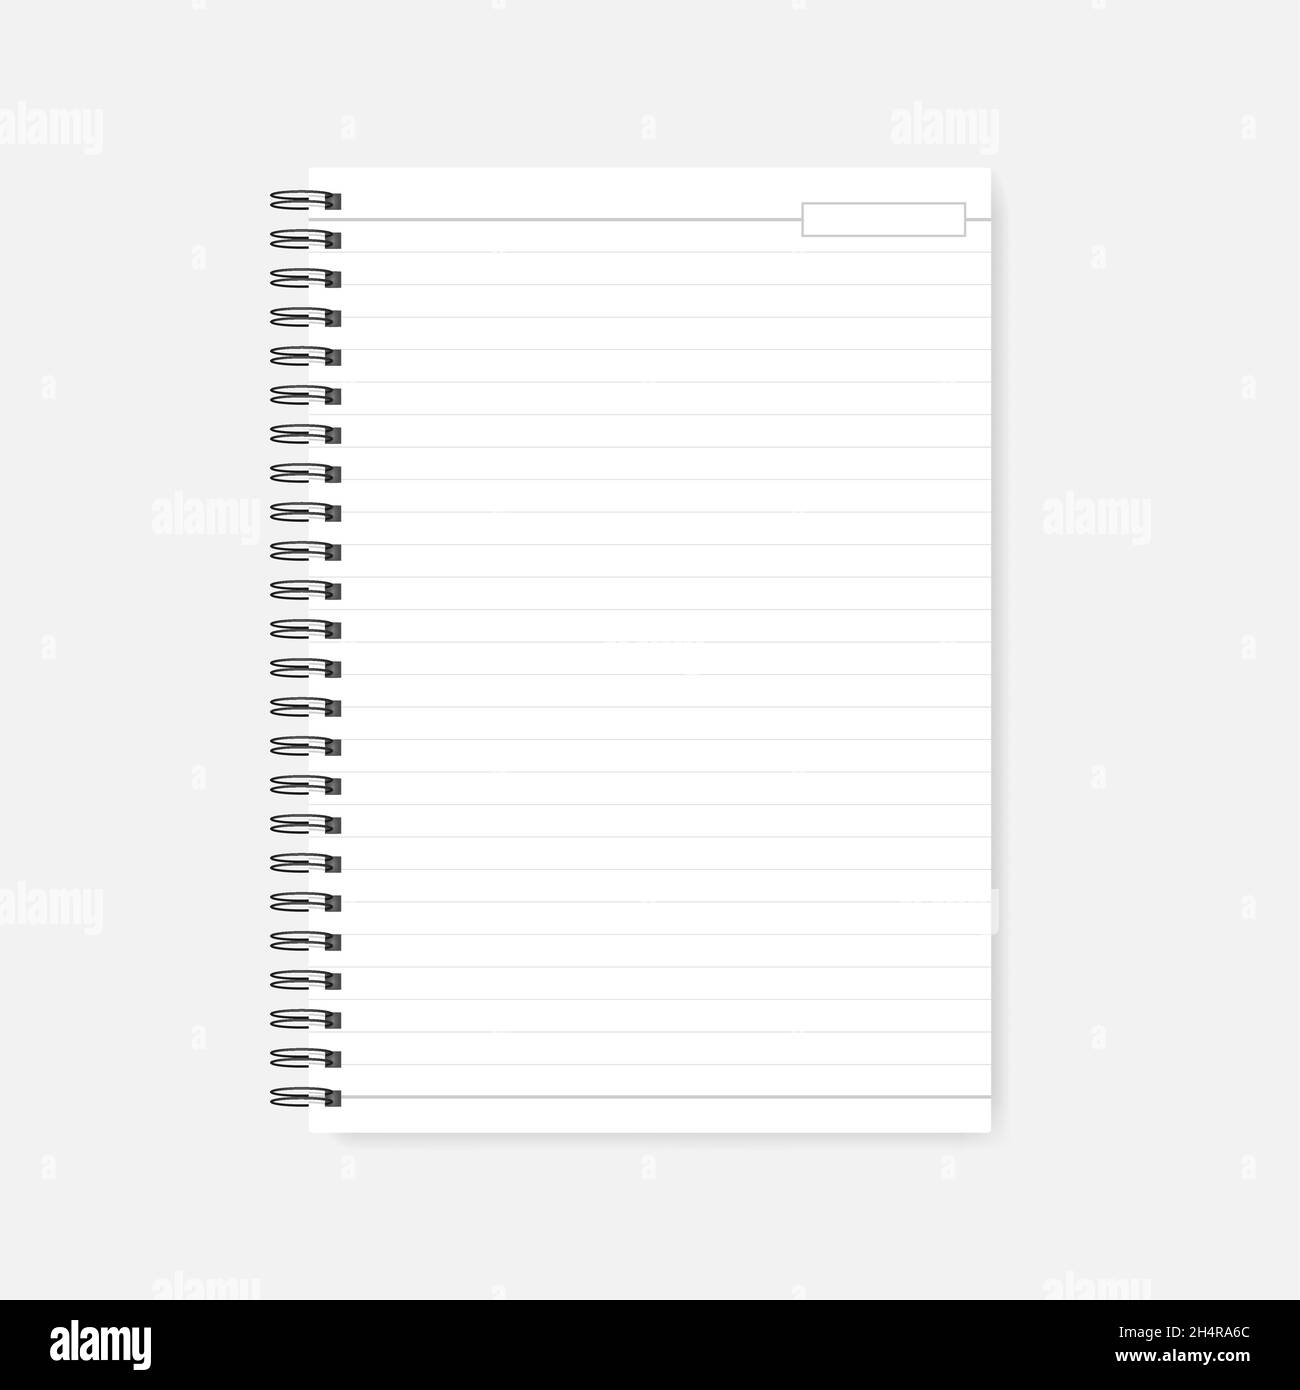 Spiralförmiges Notizbuch mit leerem Datumsaufsatz, realistisches Modell. A4-Geschäftstagebuch, Nachbau. Notizblock aus drahtgebundenem weißem Papier Stock Vektor